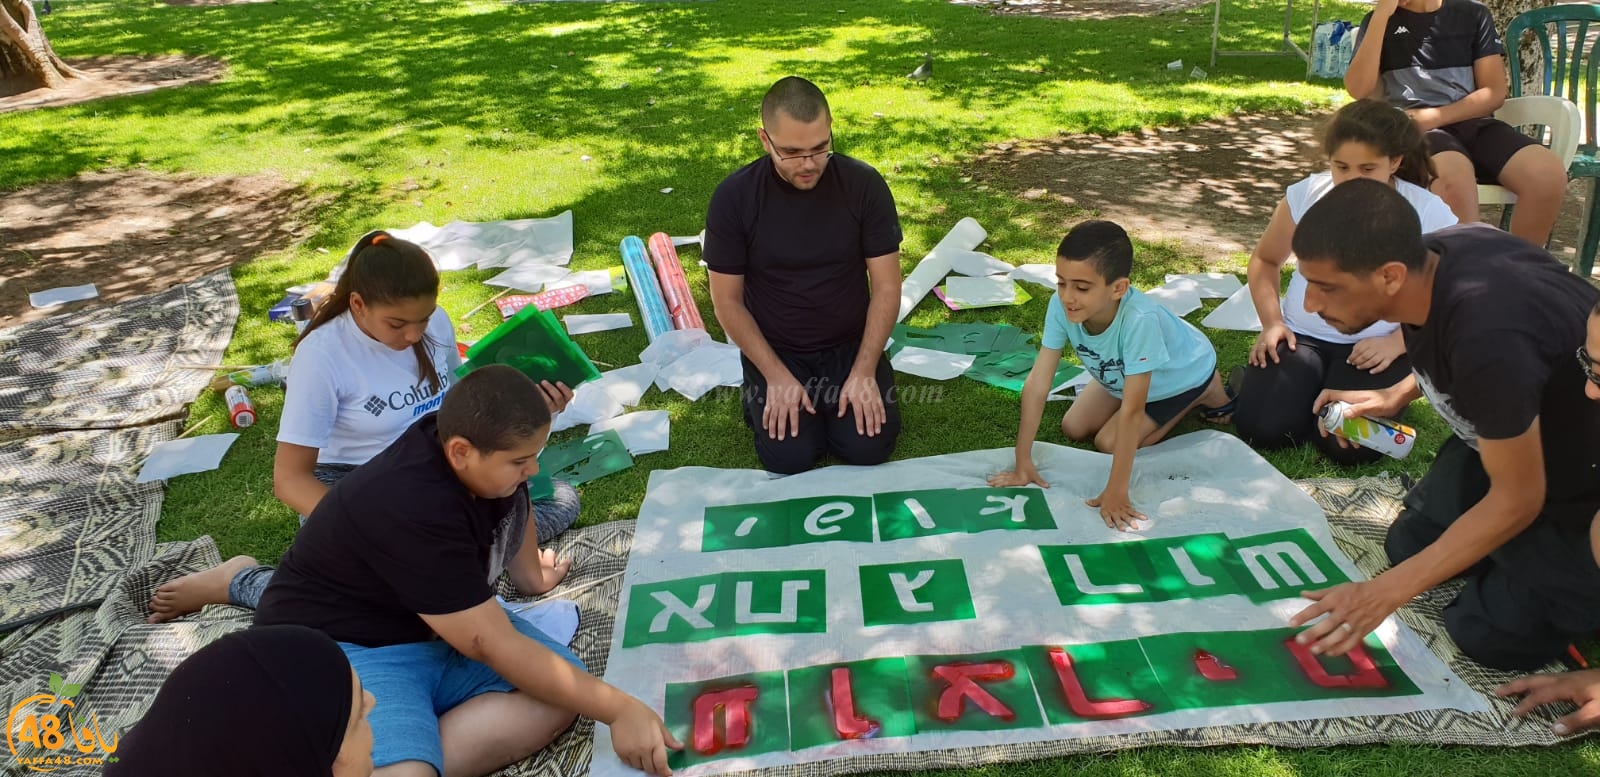 دعوات للتضامن مع عائلة سقا في حديقة العجمي وصرخة ضد أزمة السكن بيافا 